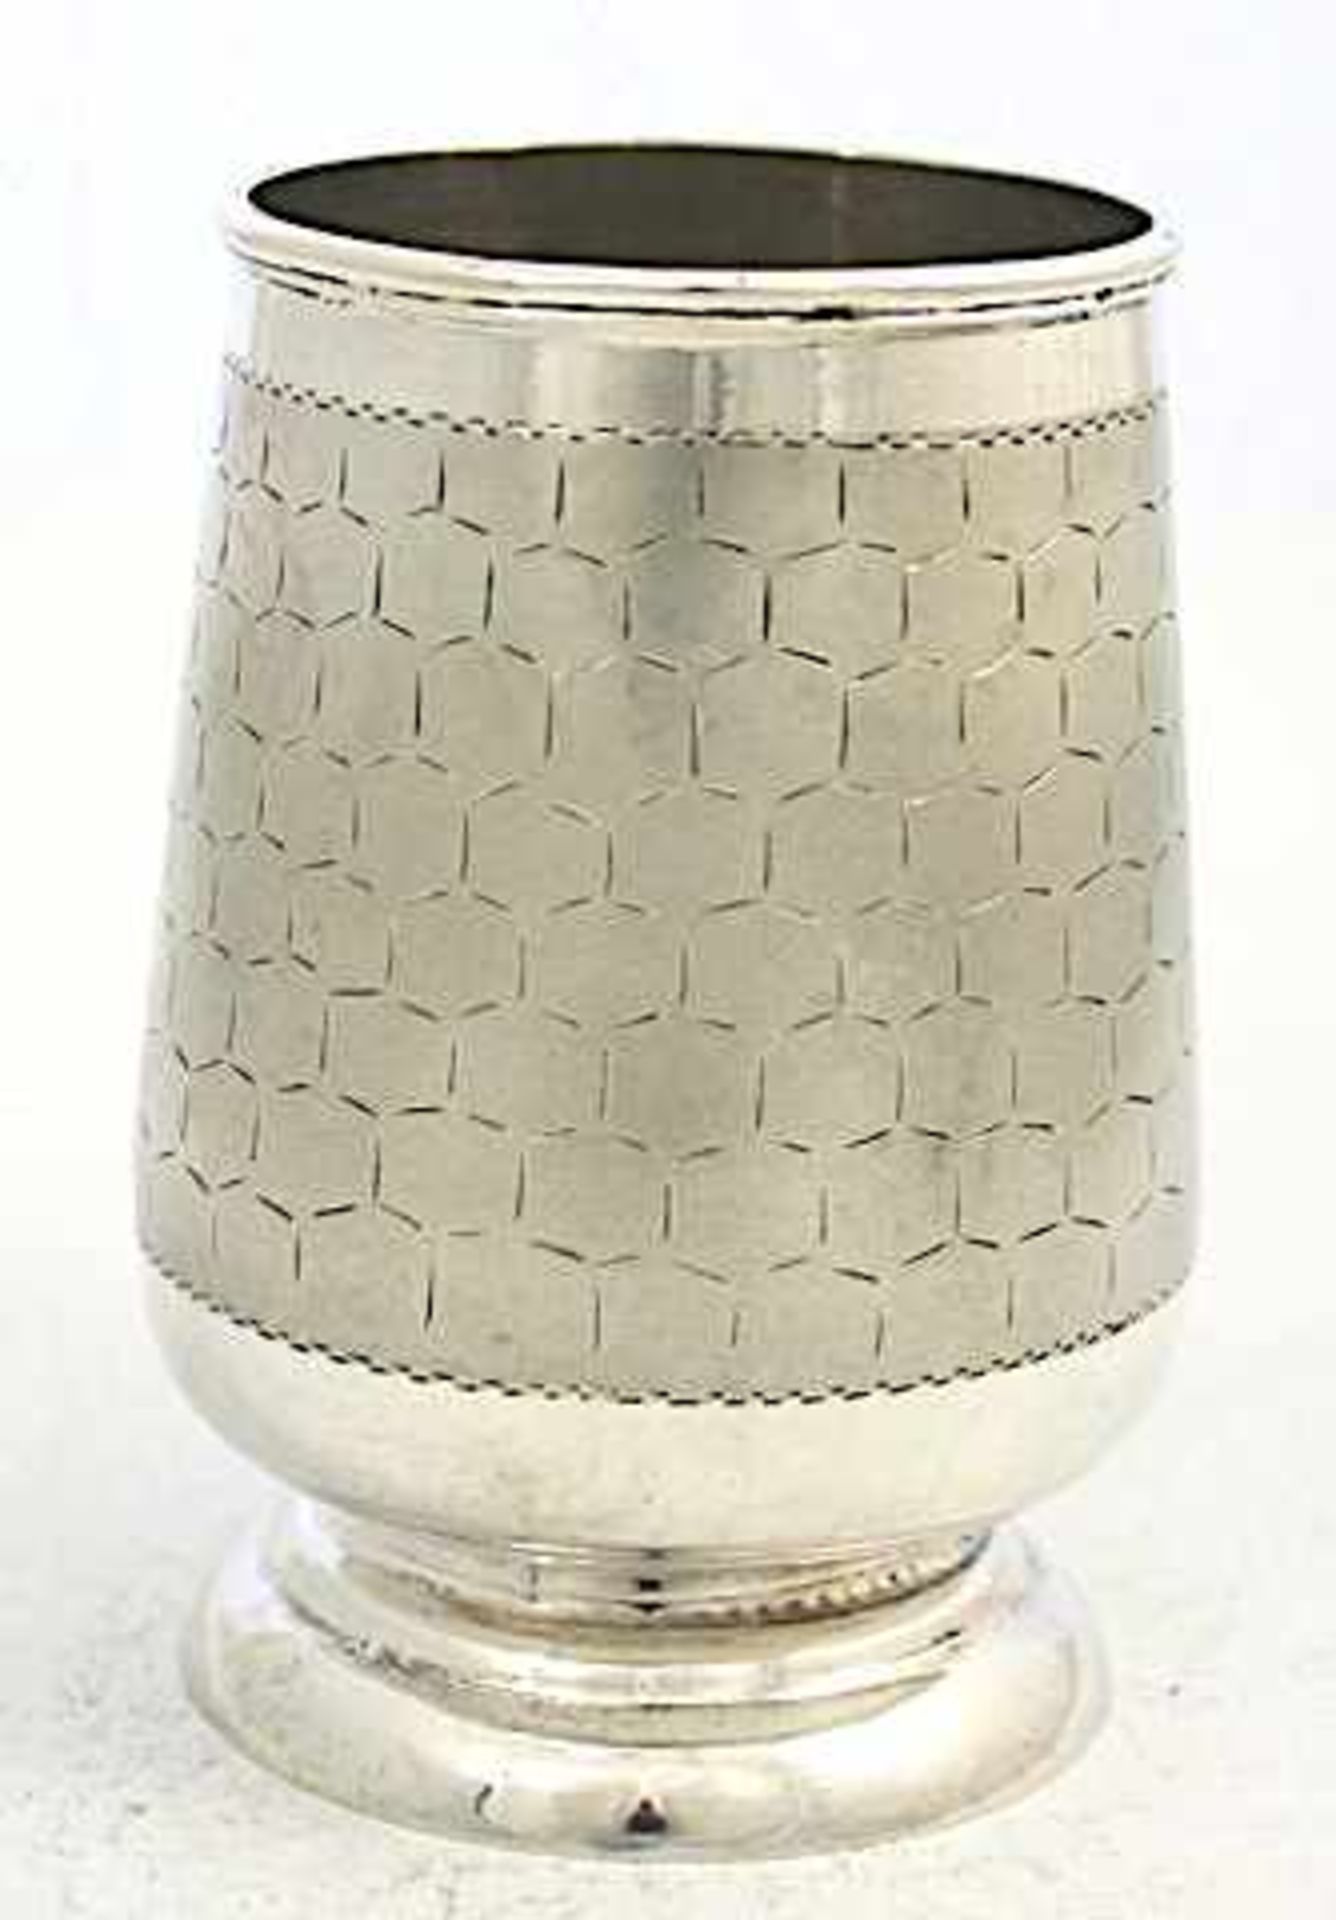 Humpen Silber, punziert "Silver", mit Wandung im Wabendekor; Gewicht: 221 g, Höhe: 11,50 cm. Geringe - Bild 3 aus 4